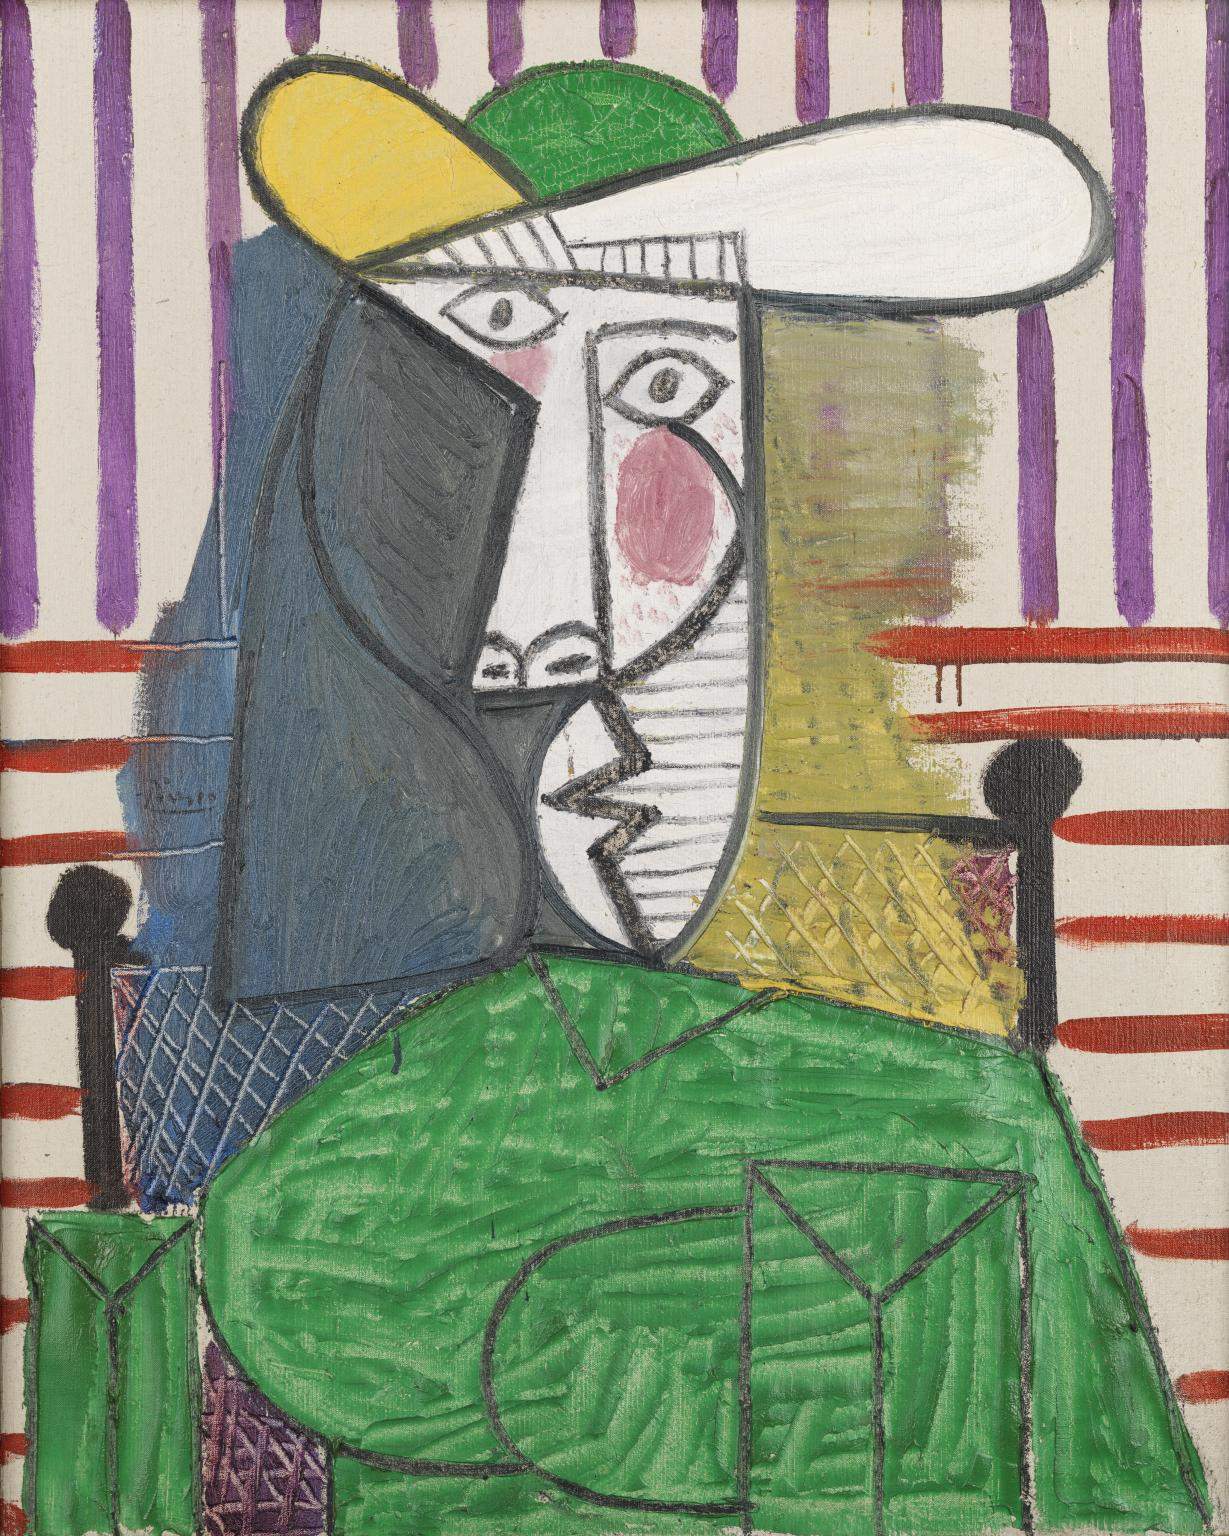 Londres, un jeune de 20 ans dégrade un tableau de Picasso à la Tate Modern